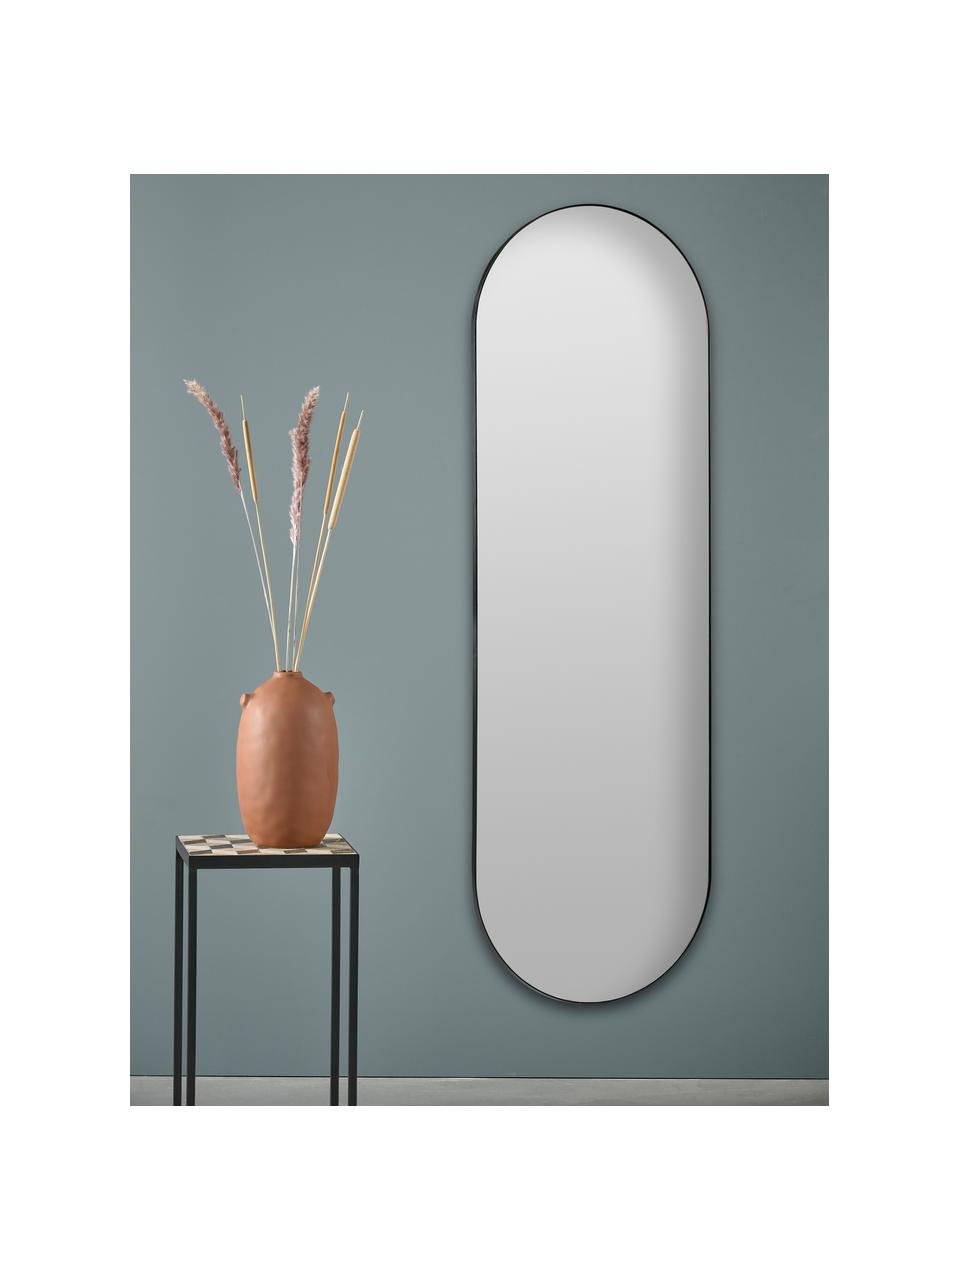 Ovaler Standspiegel Stano mit schwarzem Metallrahmen, Rahmen: Metall, beschichtet, Spiegelfläche: Spiegelglas, Schwarz, B 55 x H 170 cm